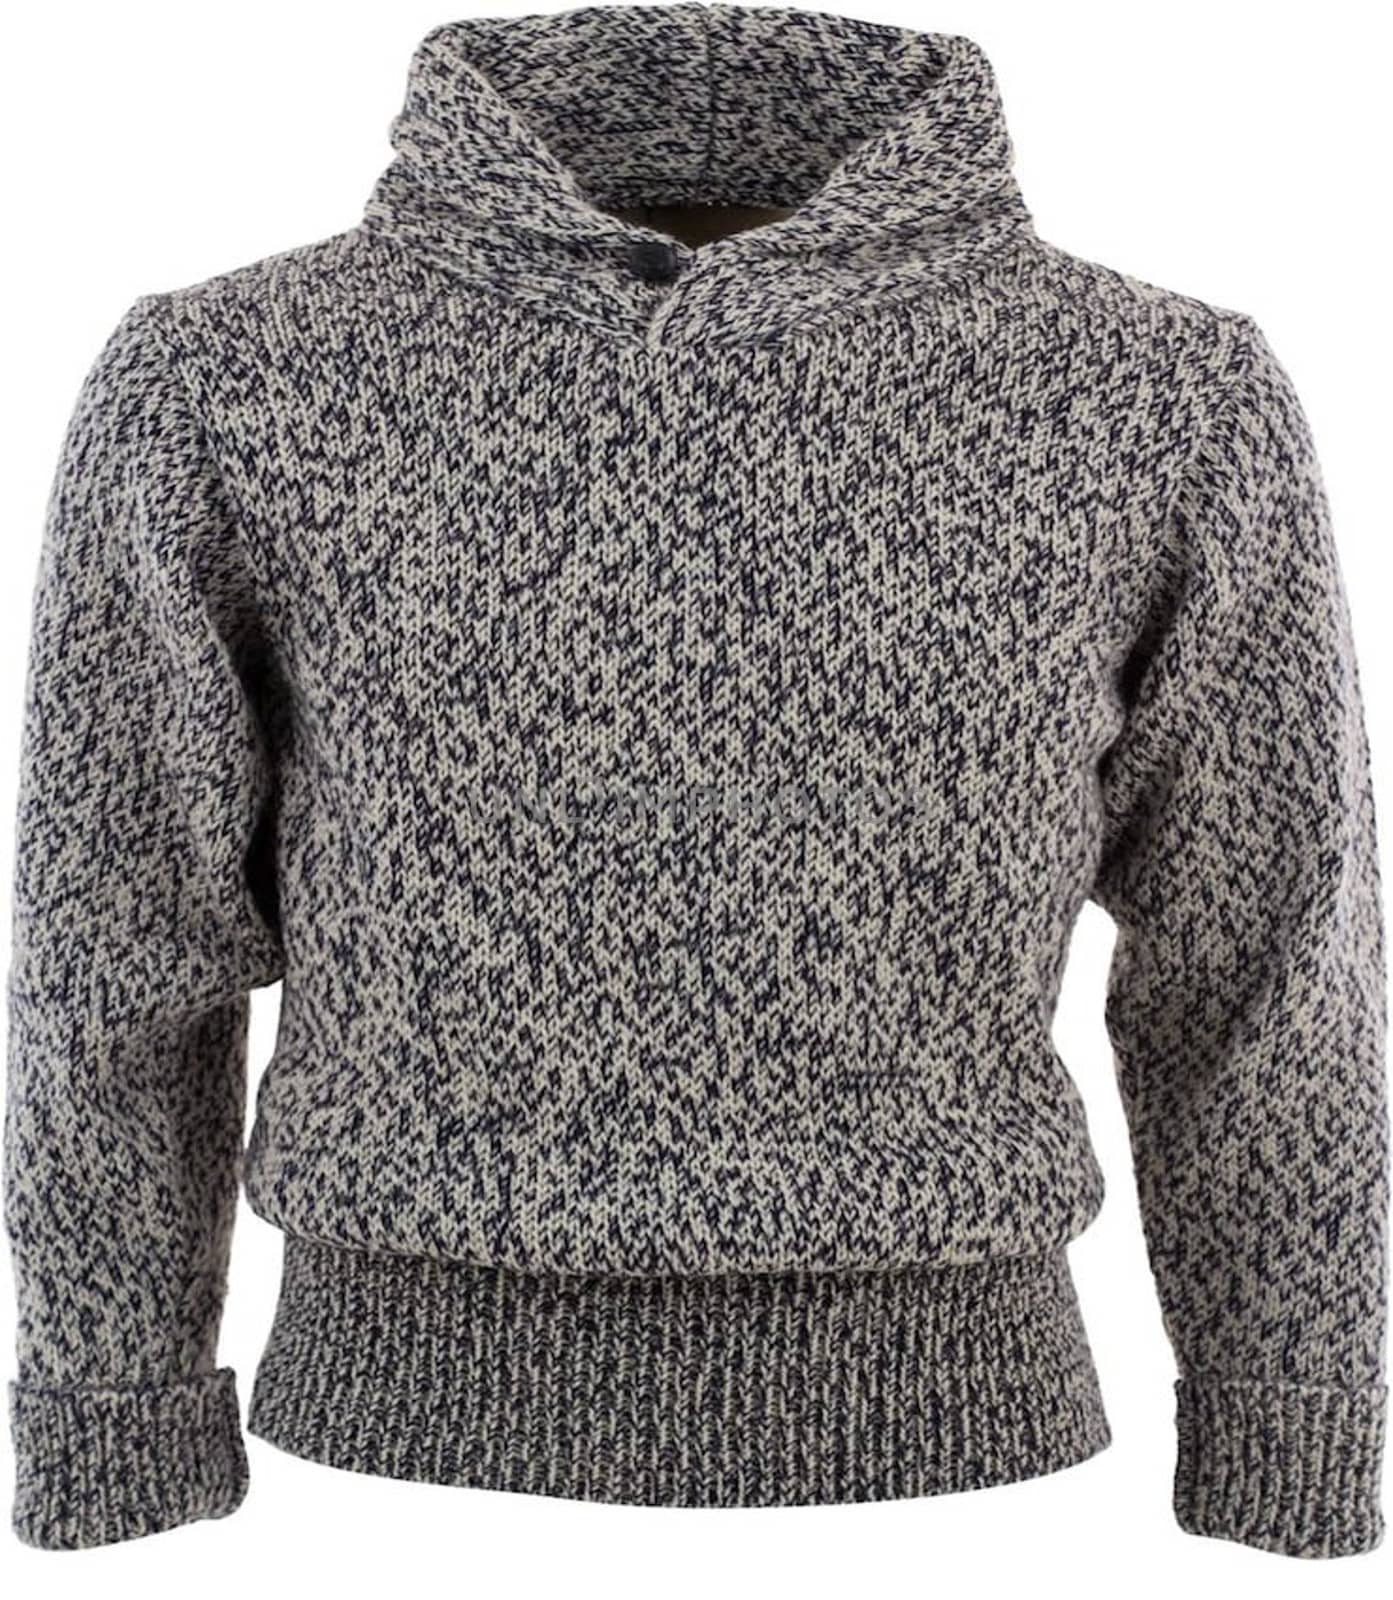 Sweater, Wool Sweater